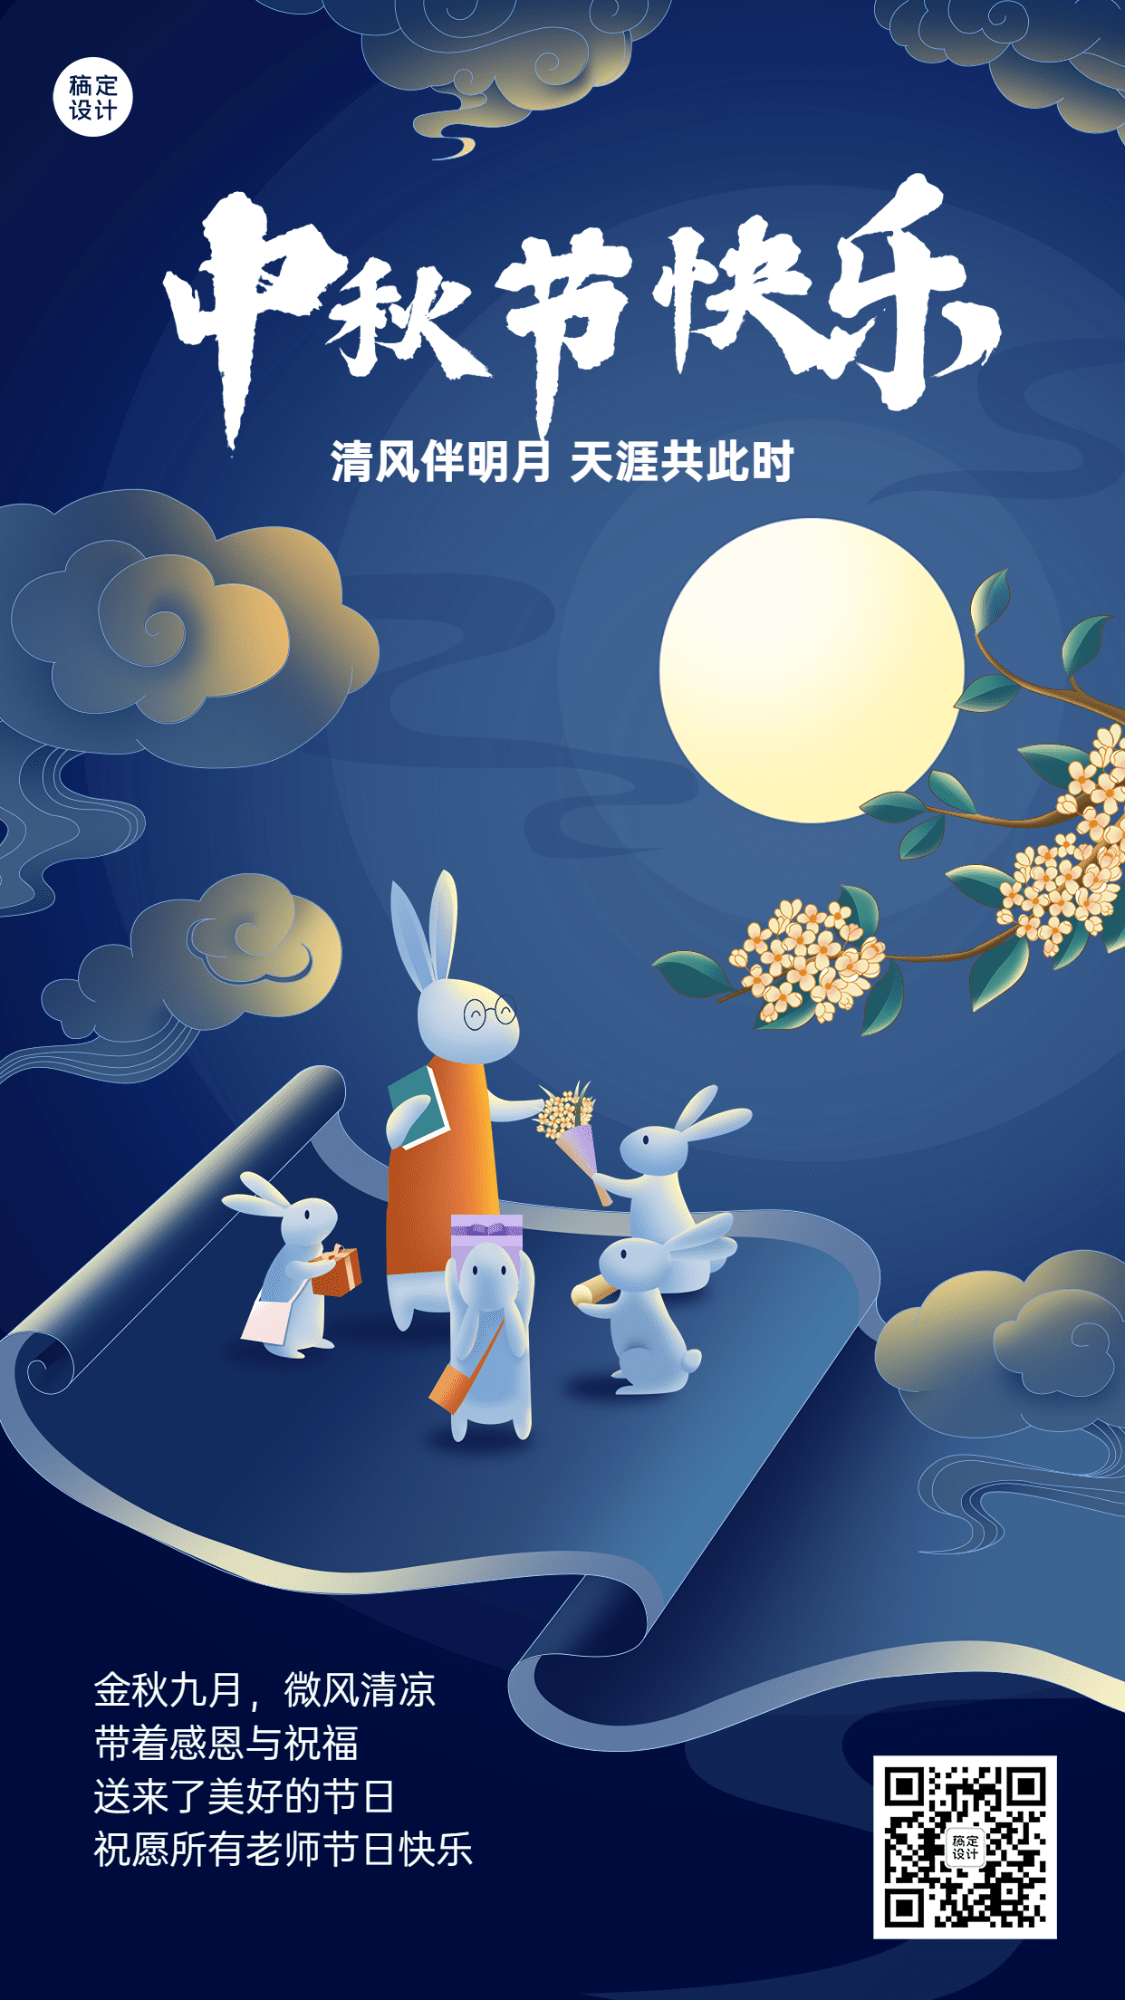 中秋节祝福教育行业中式感插画手机海报预览效果